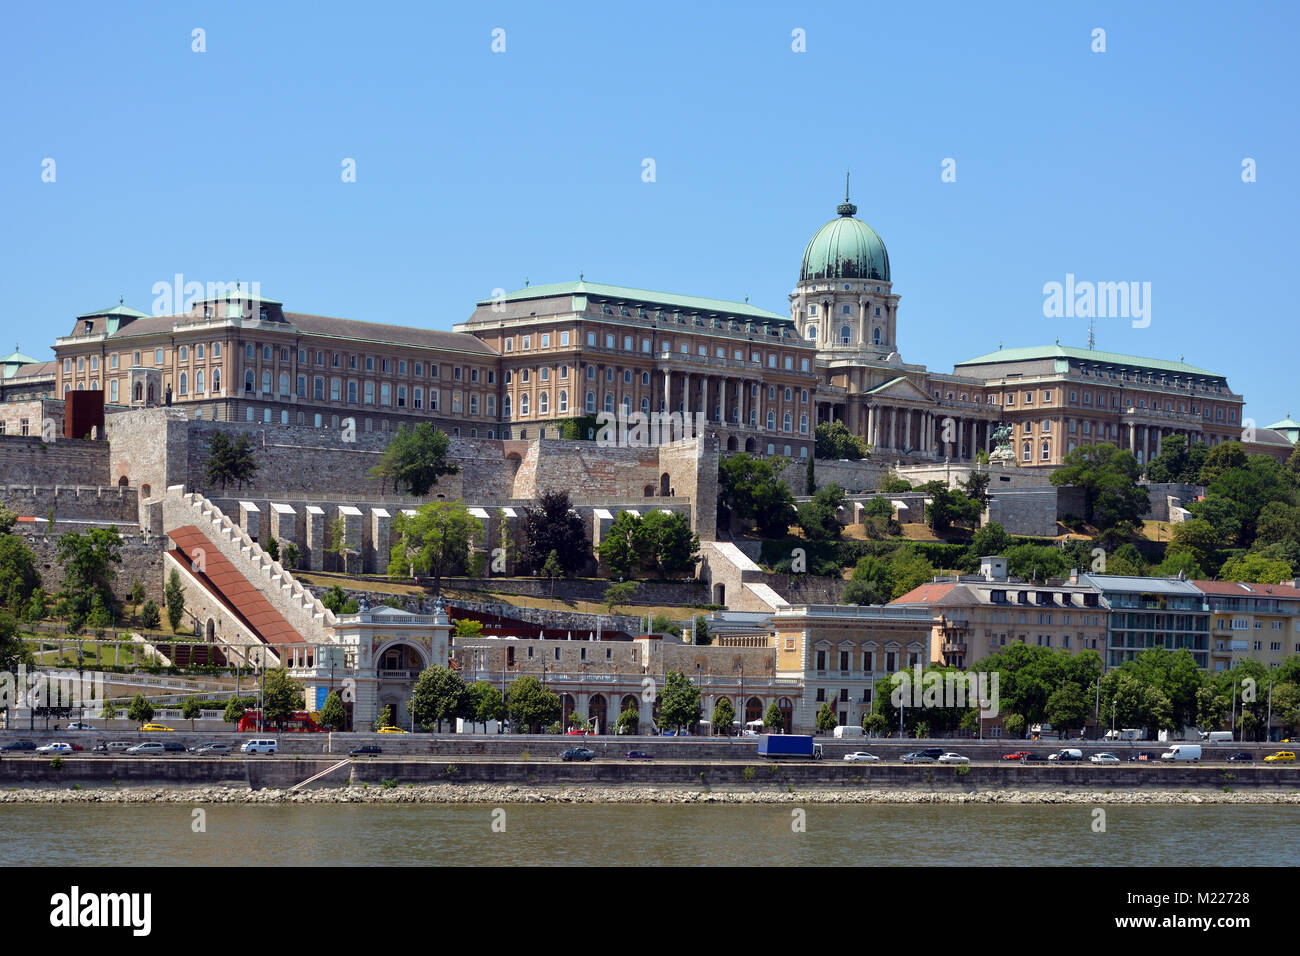 Palais Royal et bâtiments historiques dans la partie Buda de Budapest - Hongrie. Banque D'Images